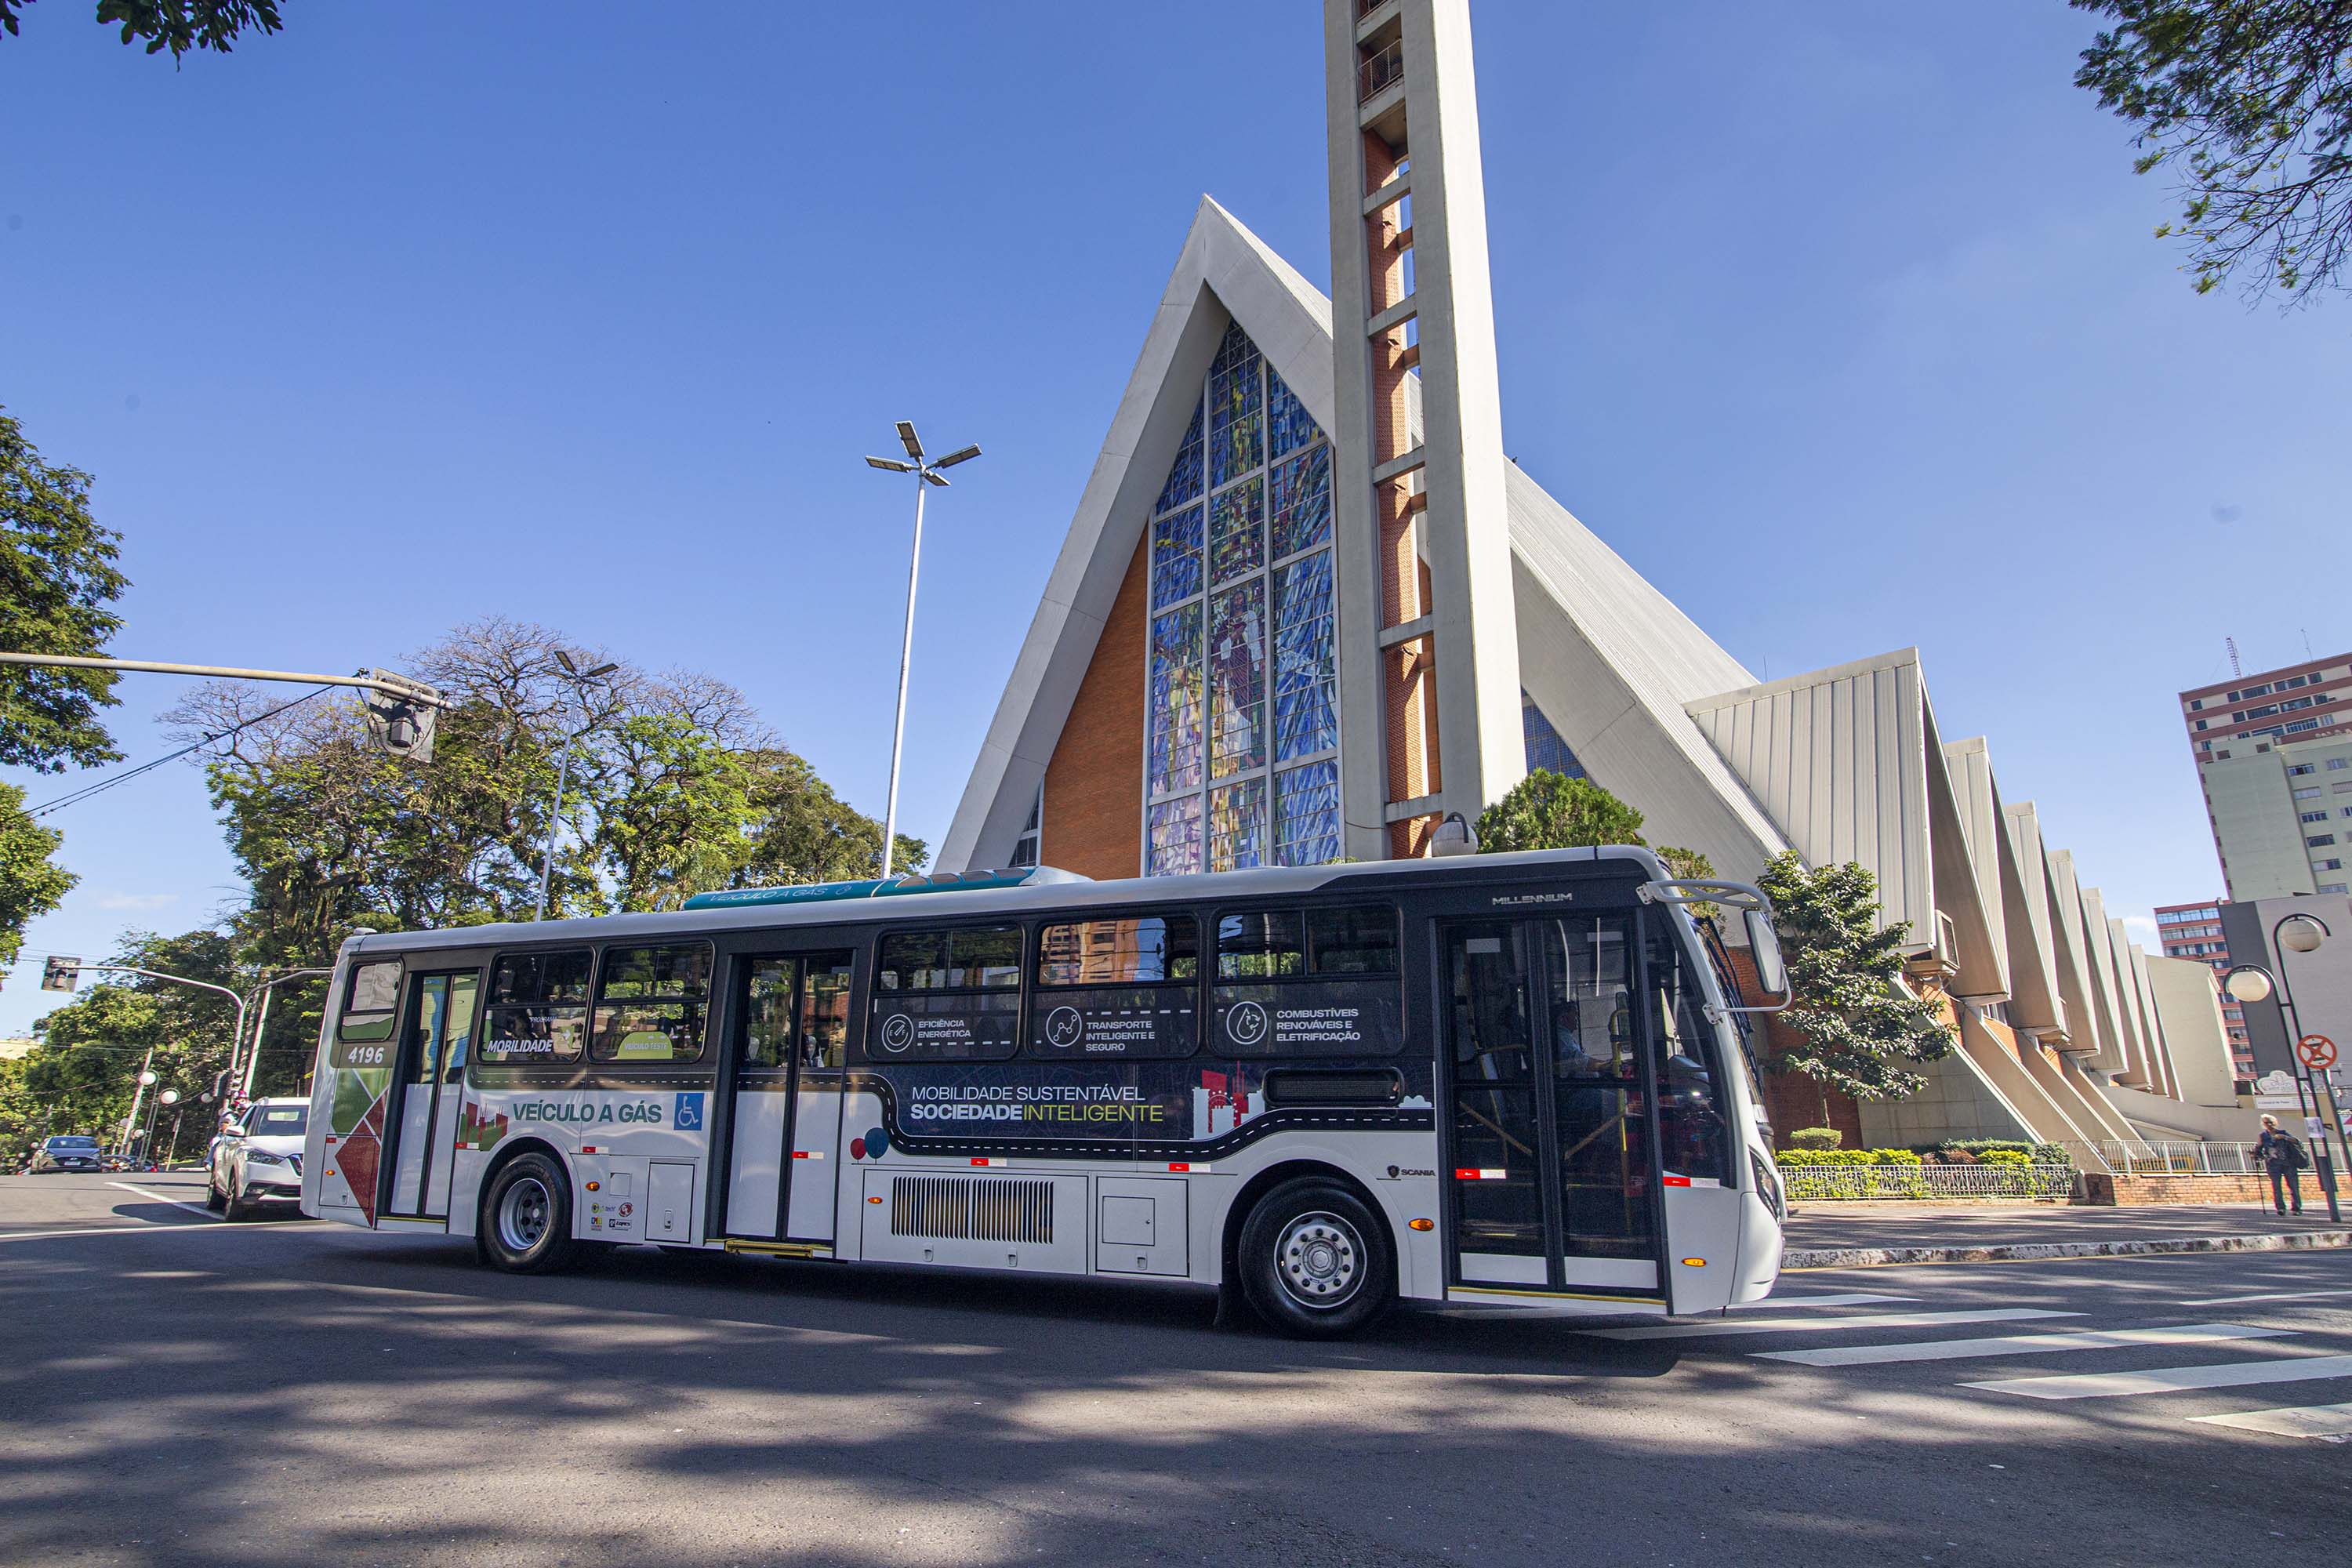 Londrina inicia teste inédito no País com ônibus movido 100% a biometano no transporte urbano Foto: Compagas